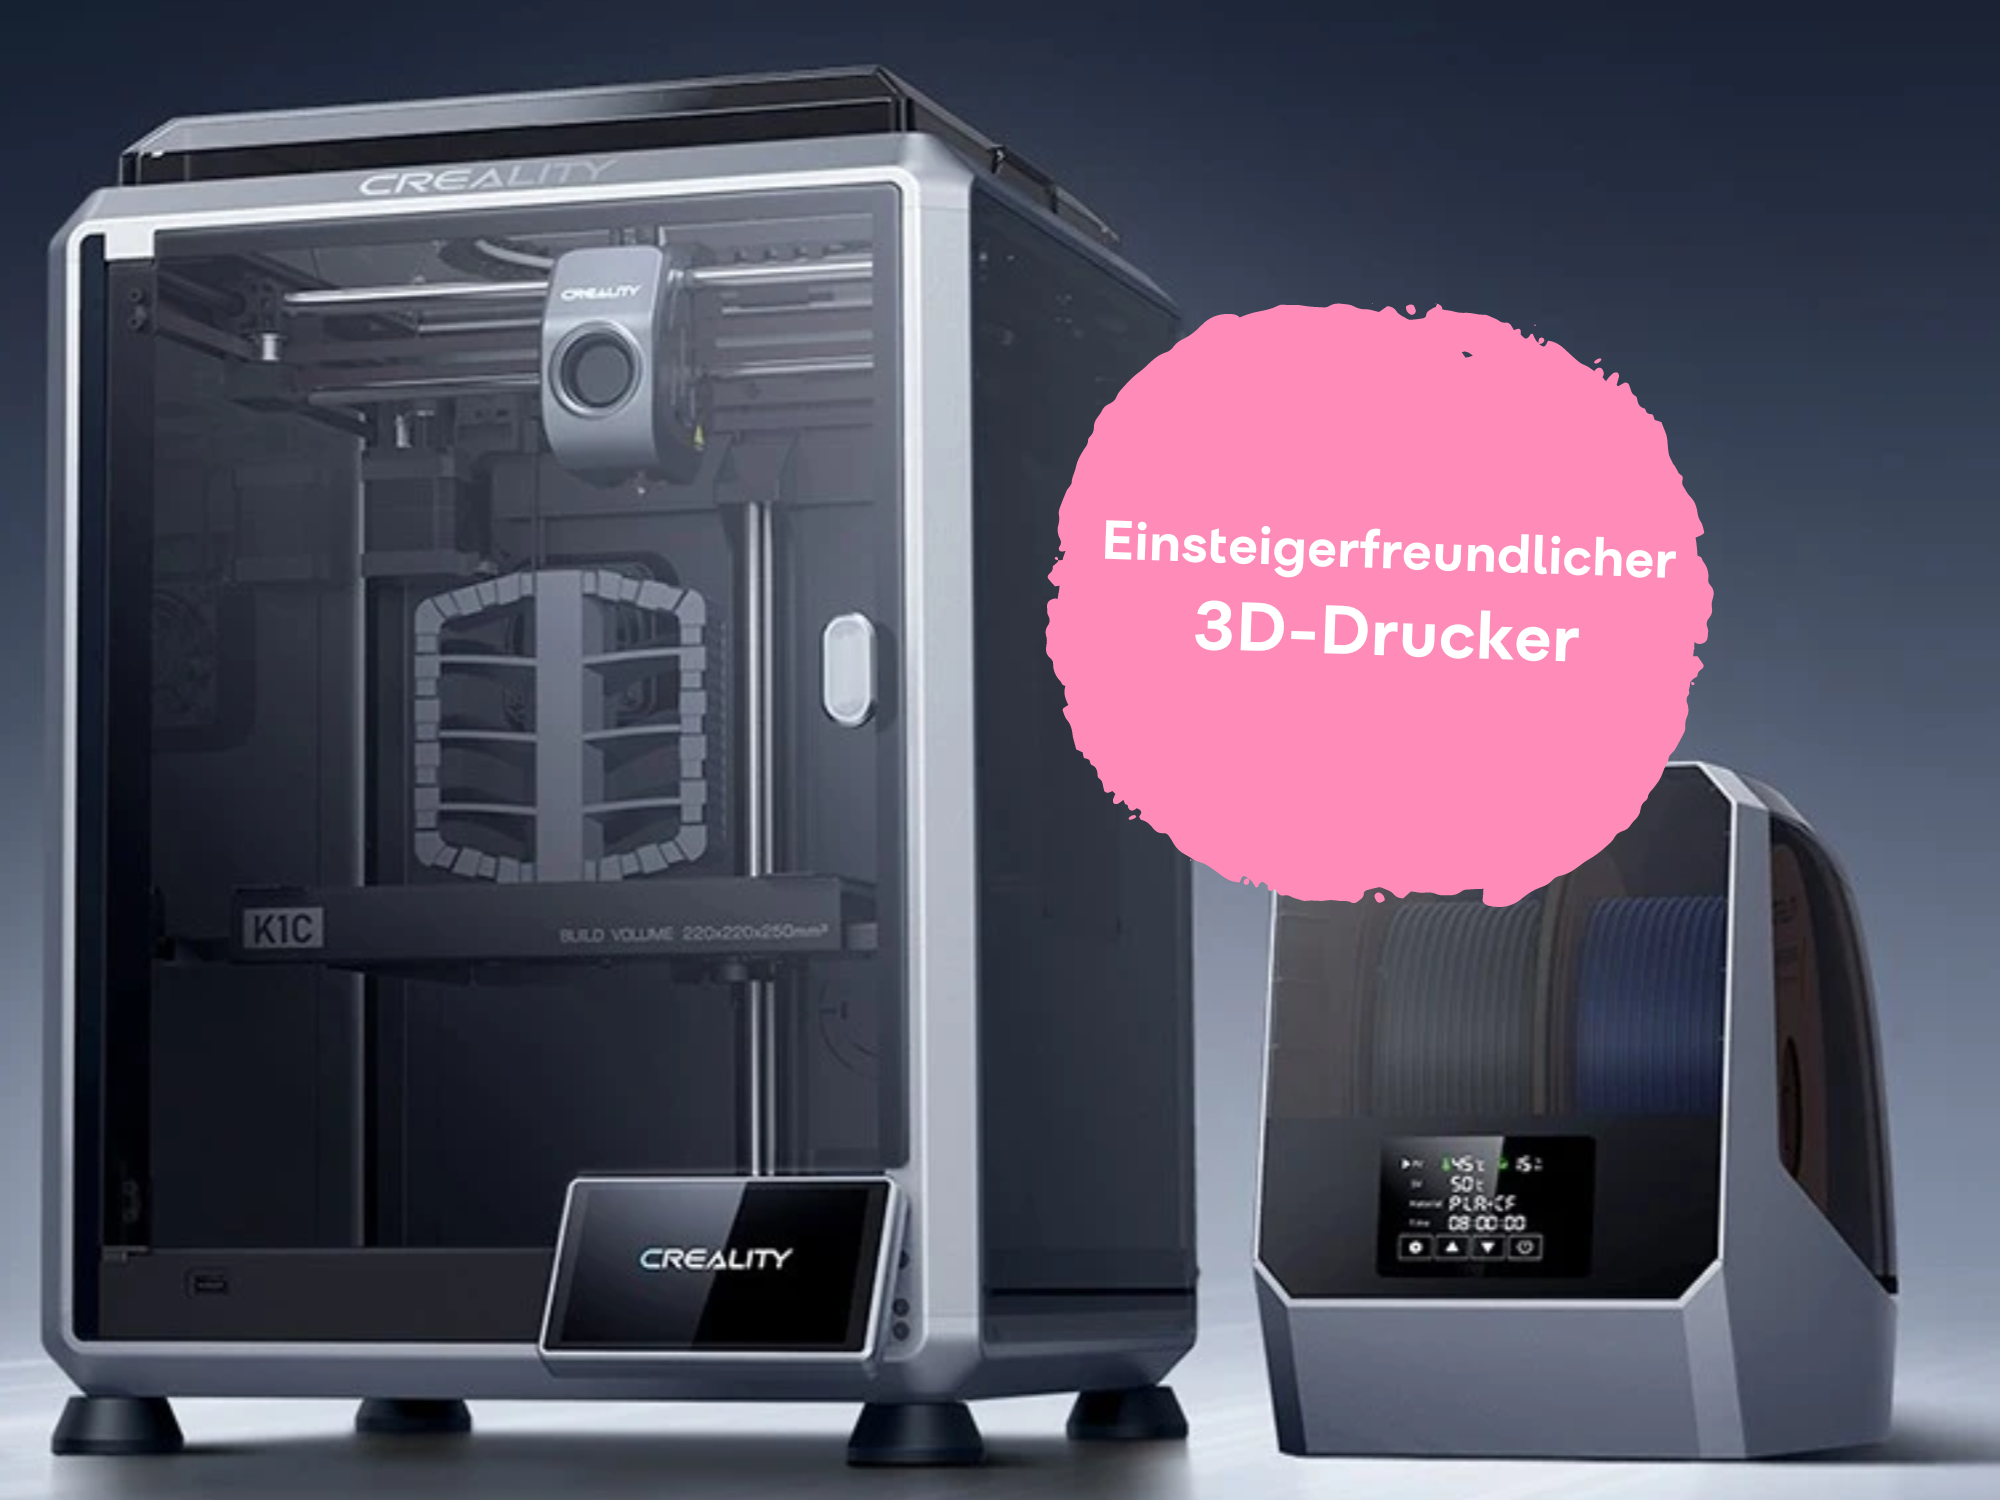 3D-Drucker für Einsteiger: Hier gibt’s die coole Technik günstiger